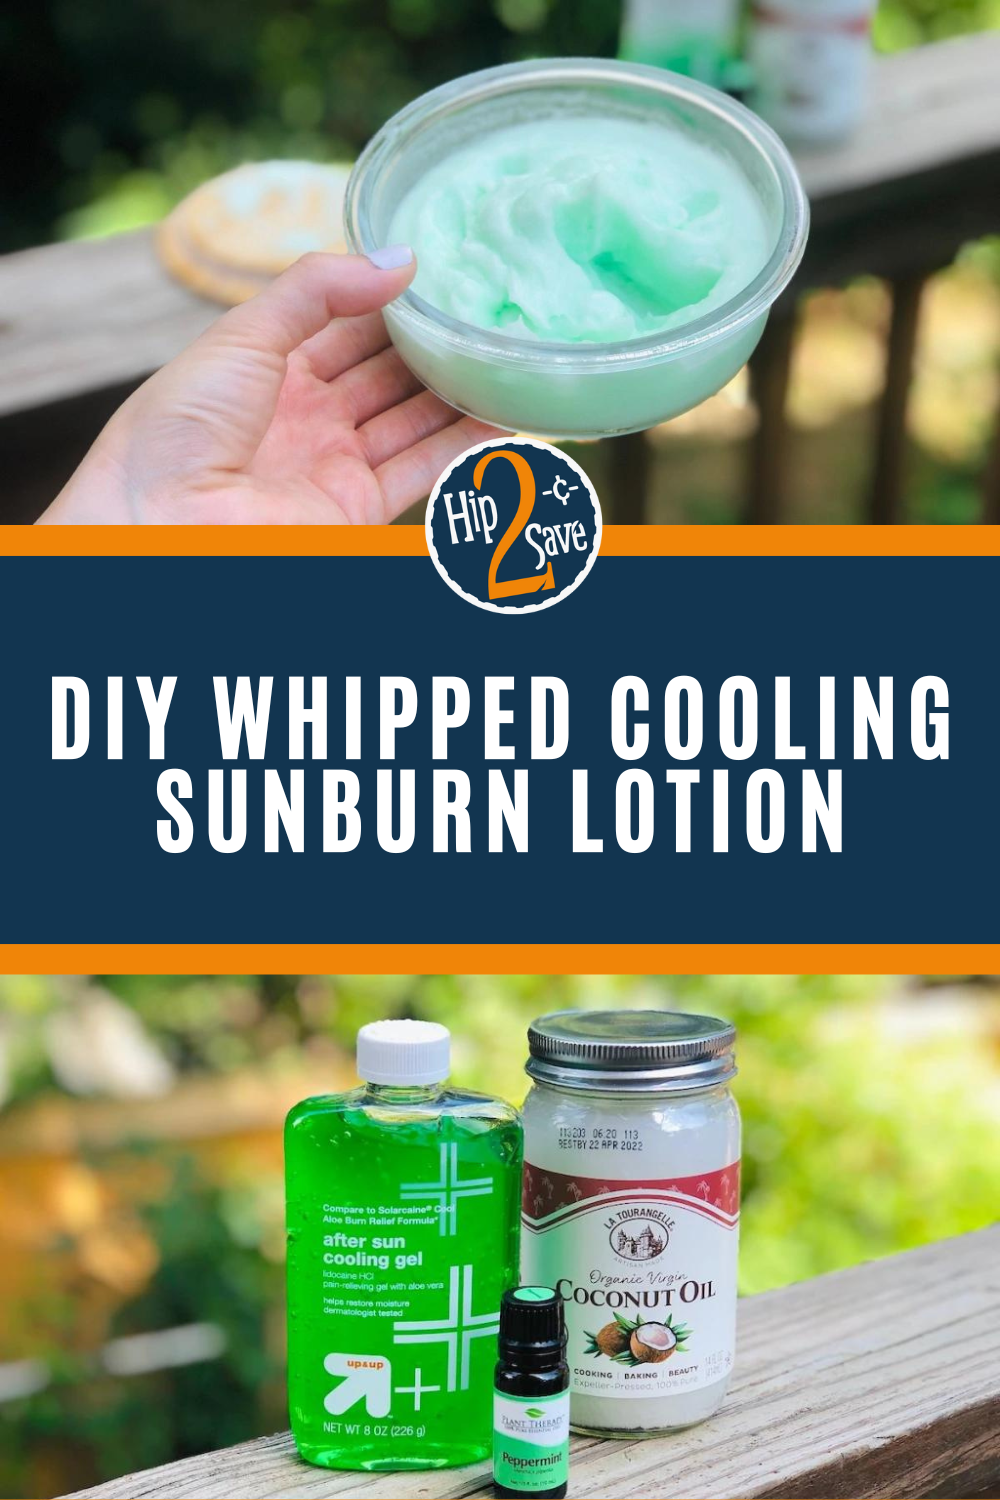 DIY Sunburn Relief Cream Recipe